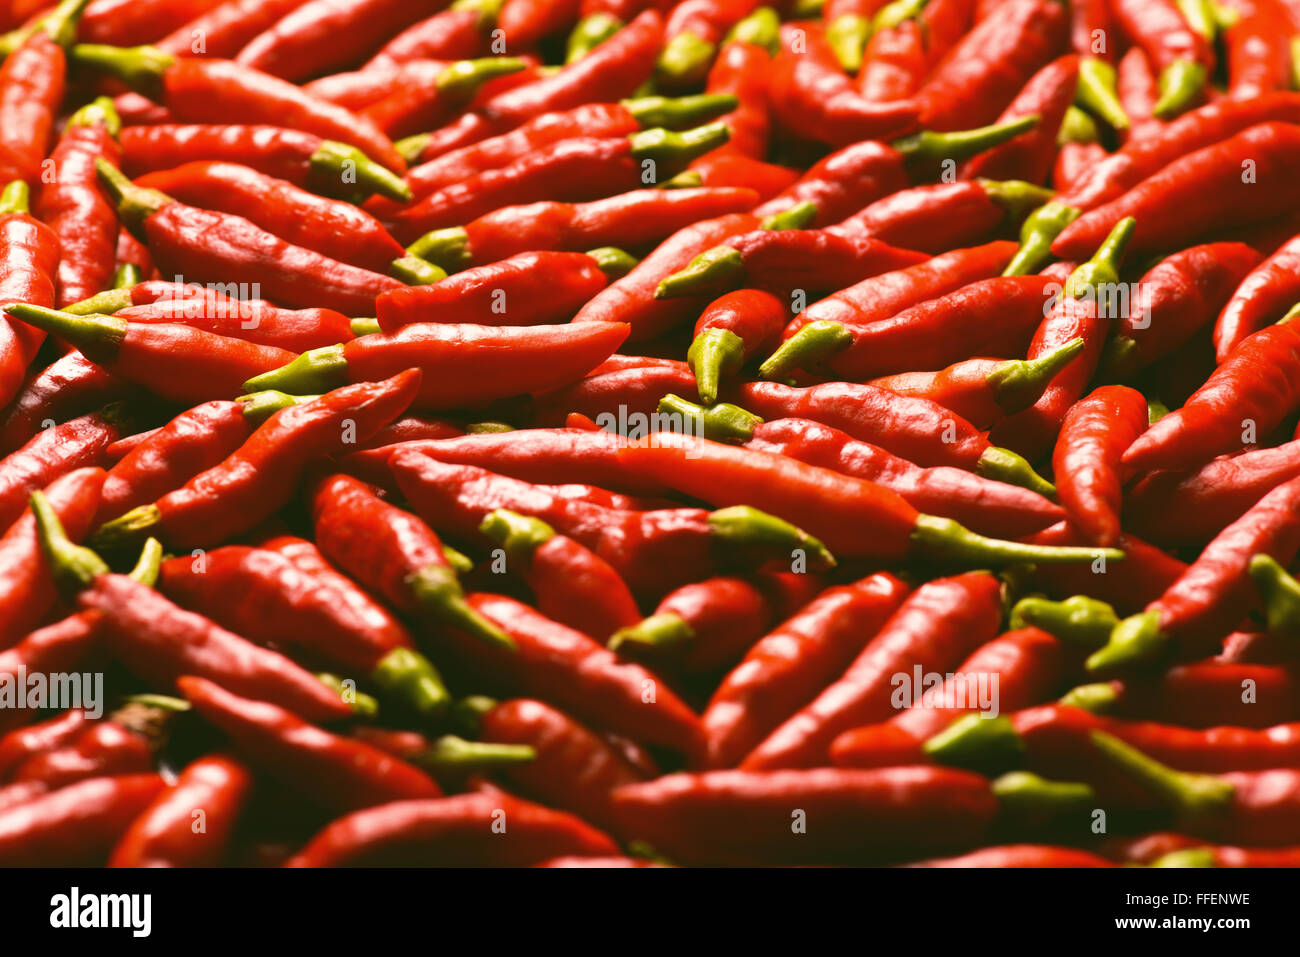 Immagine di peperoni rossi con la profondità di campo e la messa a fuoco al centro. Foto Stock